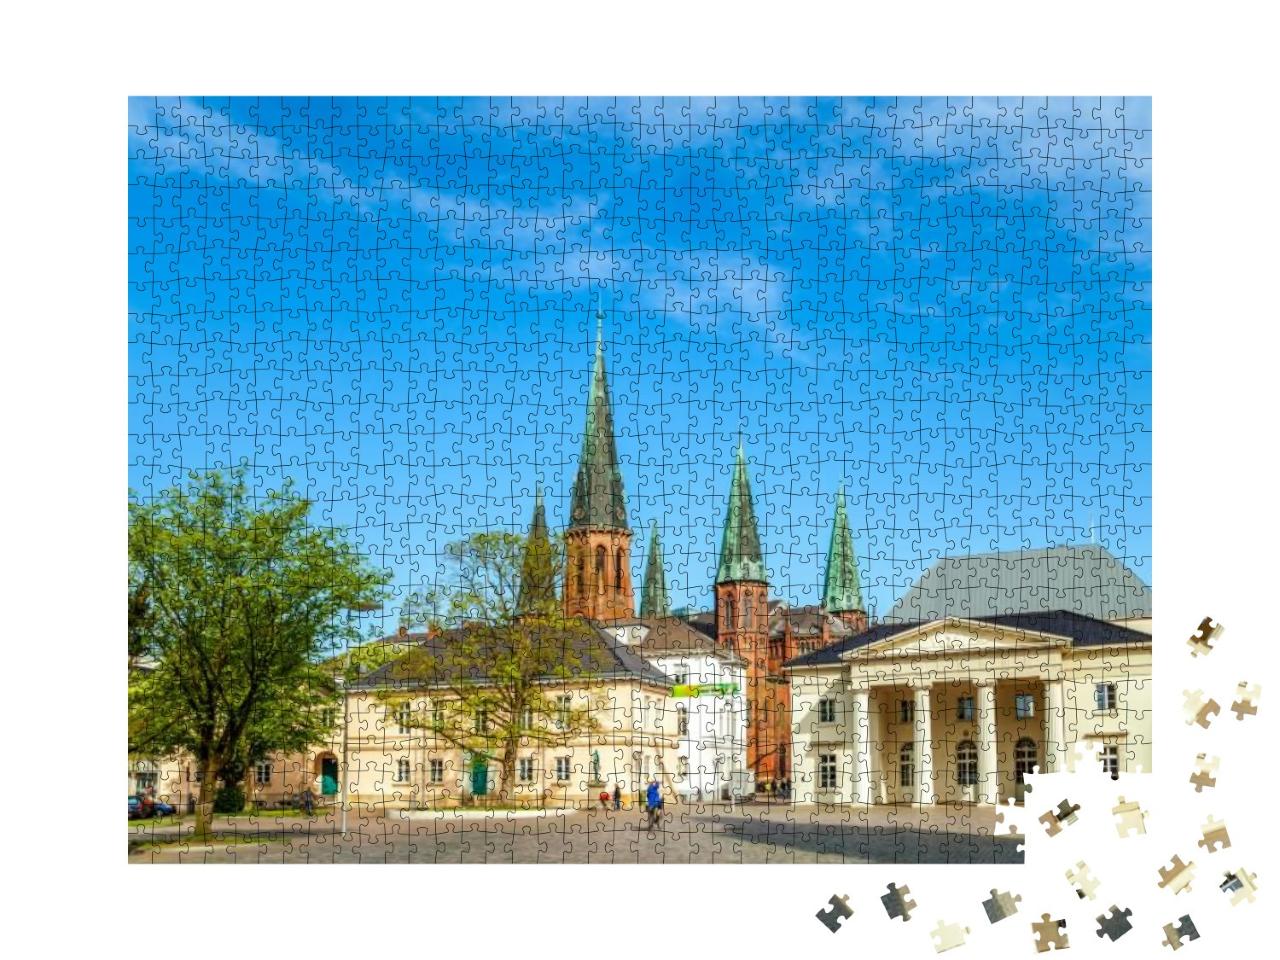 Puzzle 1000 Teile „Schloss und Kirche von Oldenburg, Niedersachsen, Deutschland“